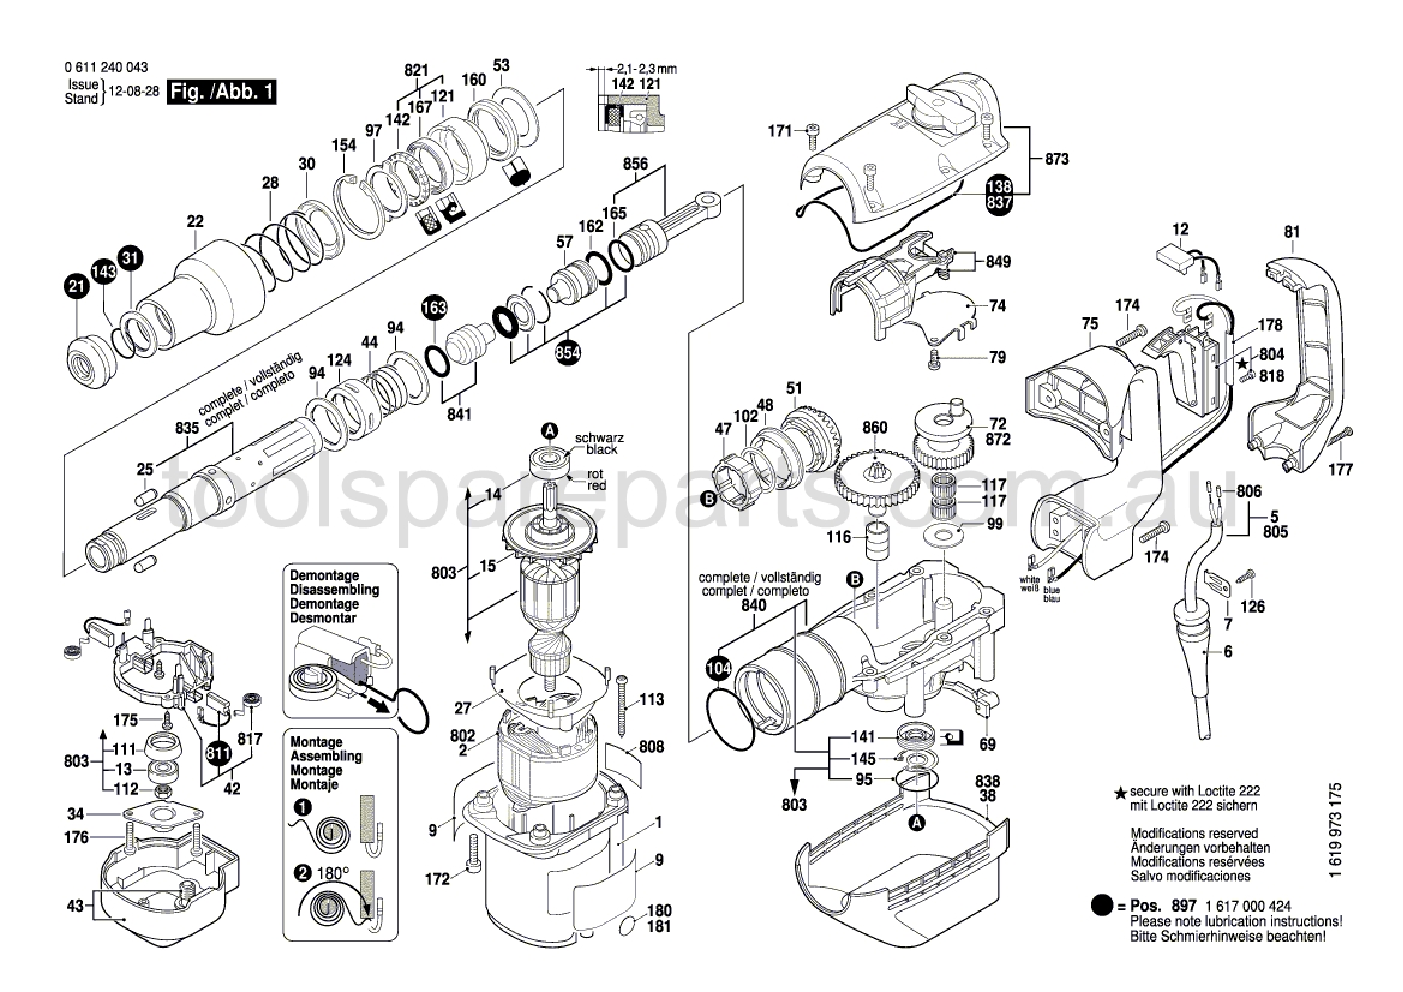 Bosch GBH 5-38 D 0611240037  Diagram 1